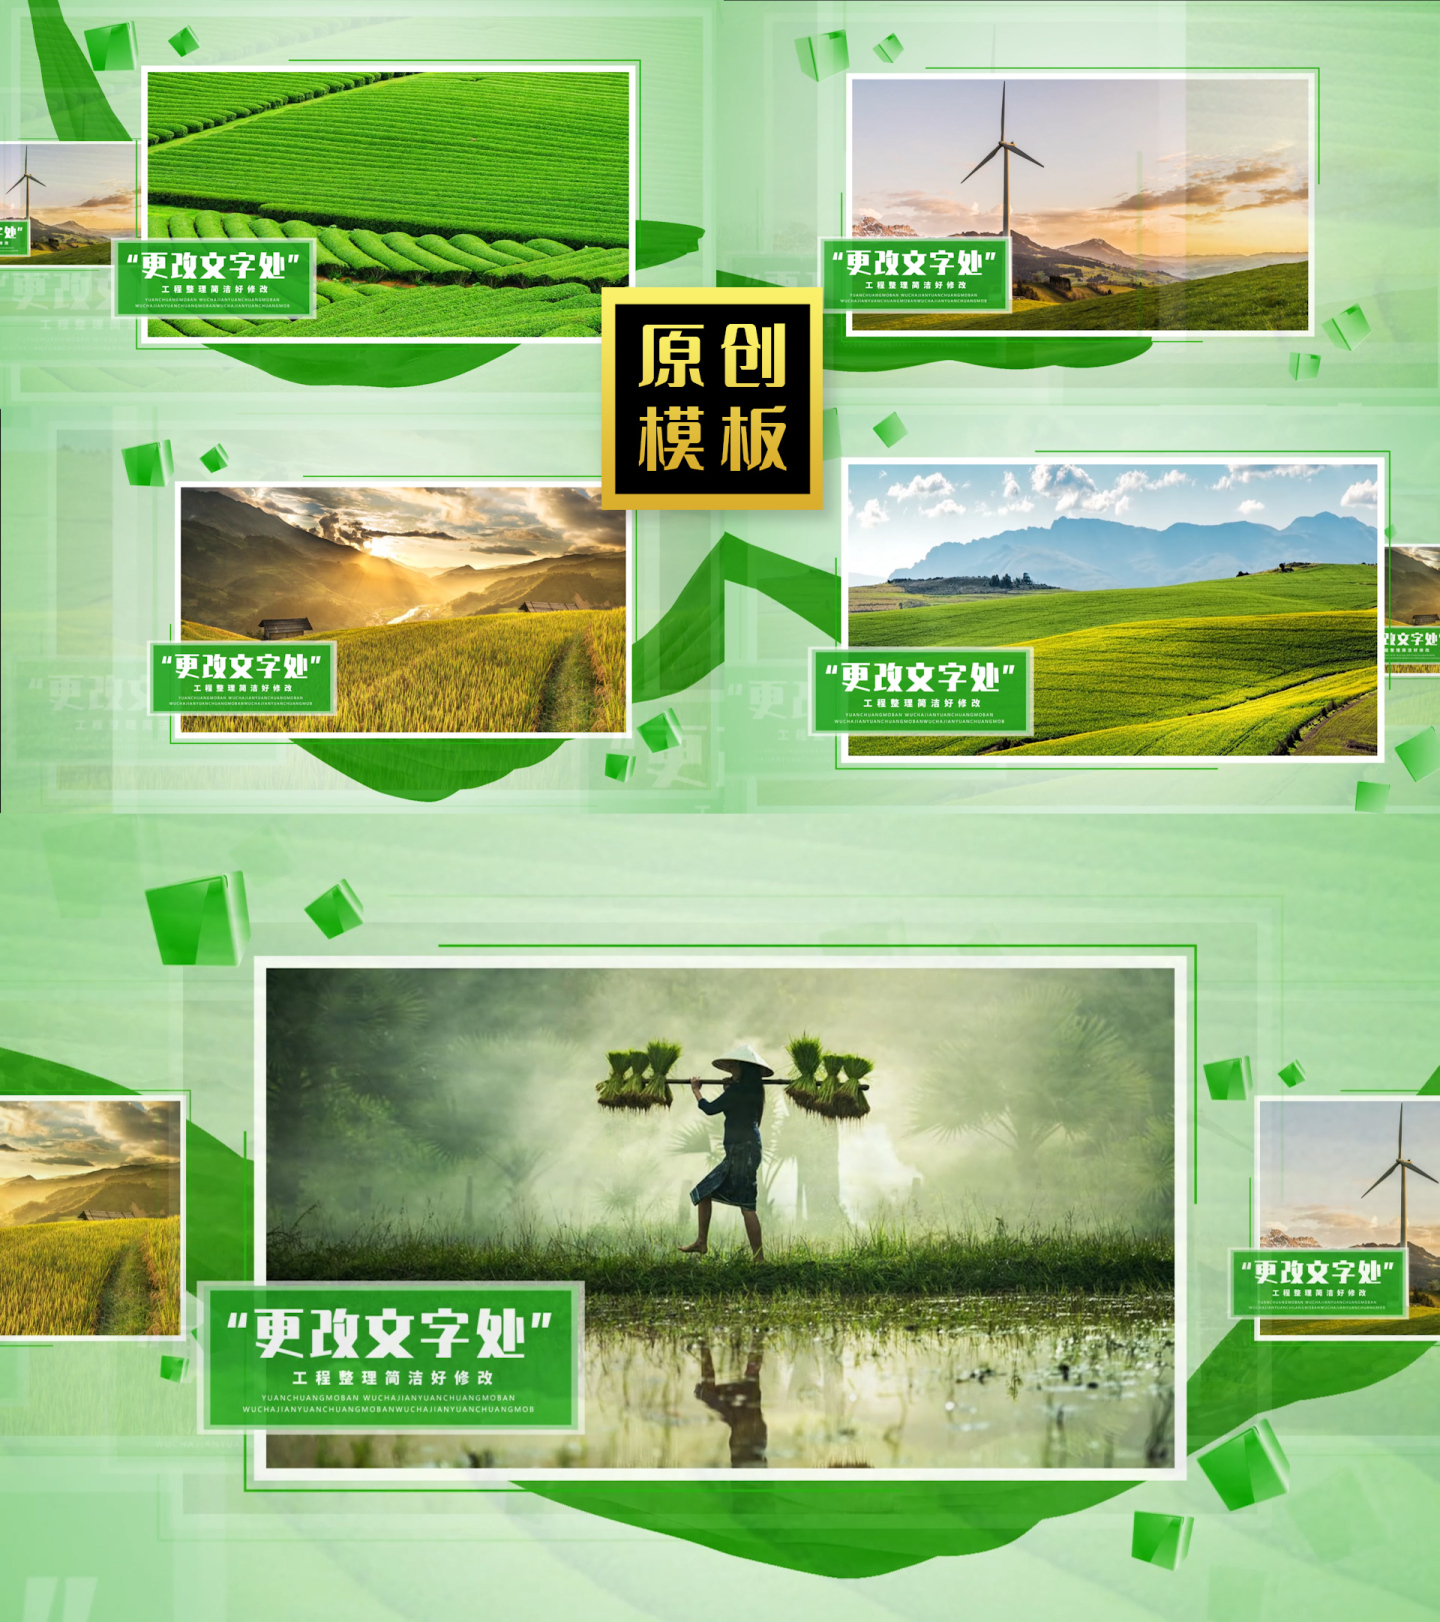 48图绿色图文介绍生态环保照片展示包装